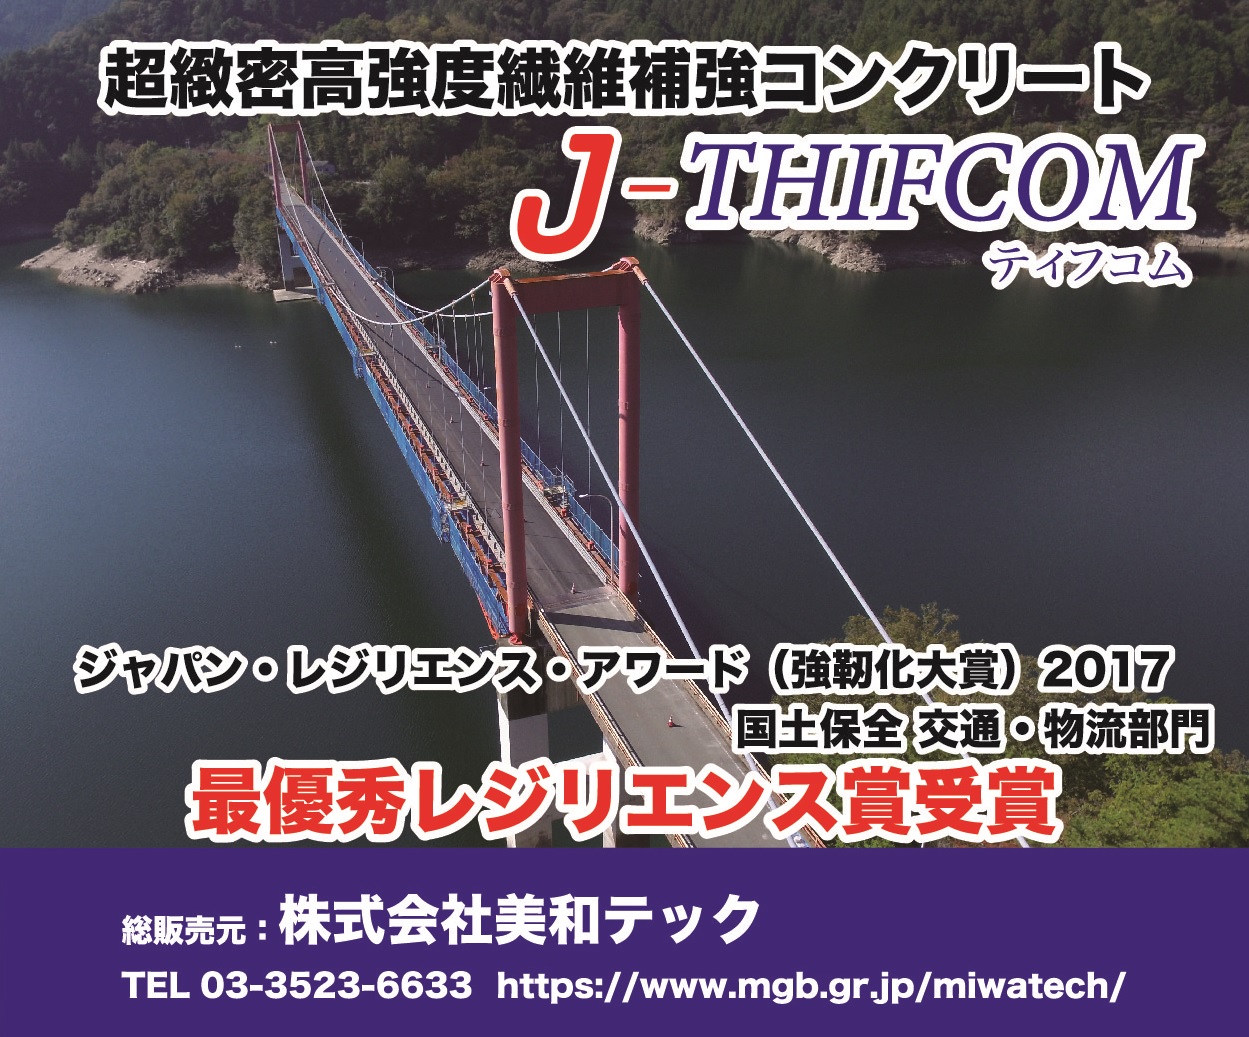 超緻密高強度繊維補強コンクリート『J-THIFCOM』